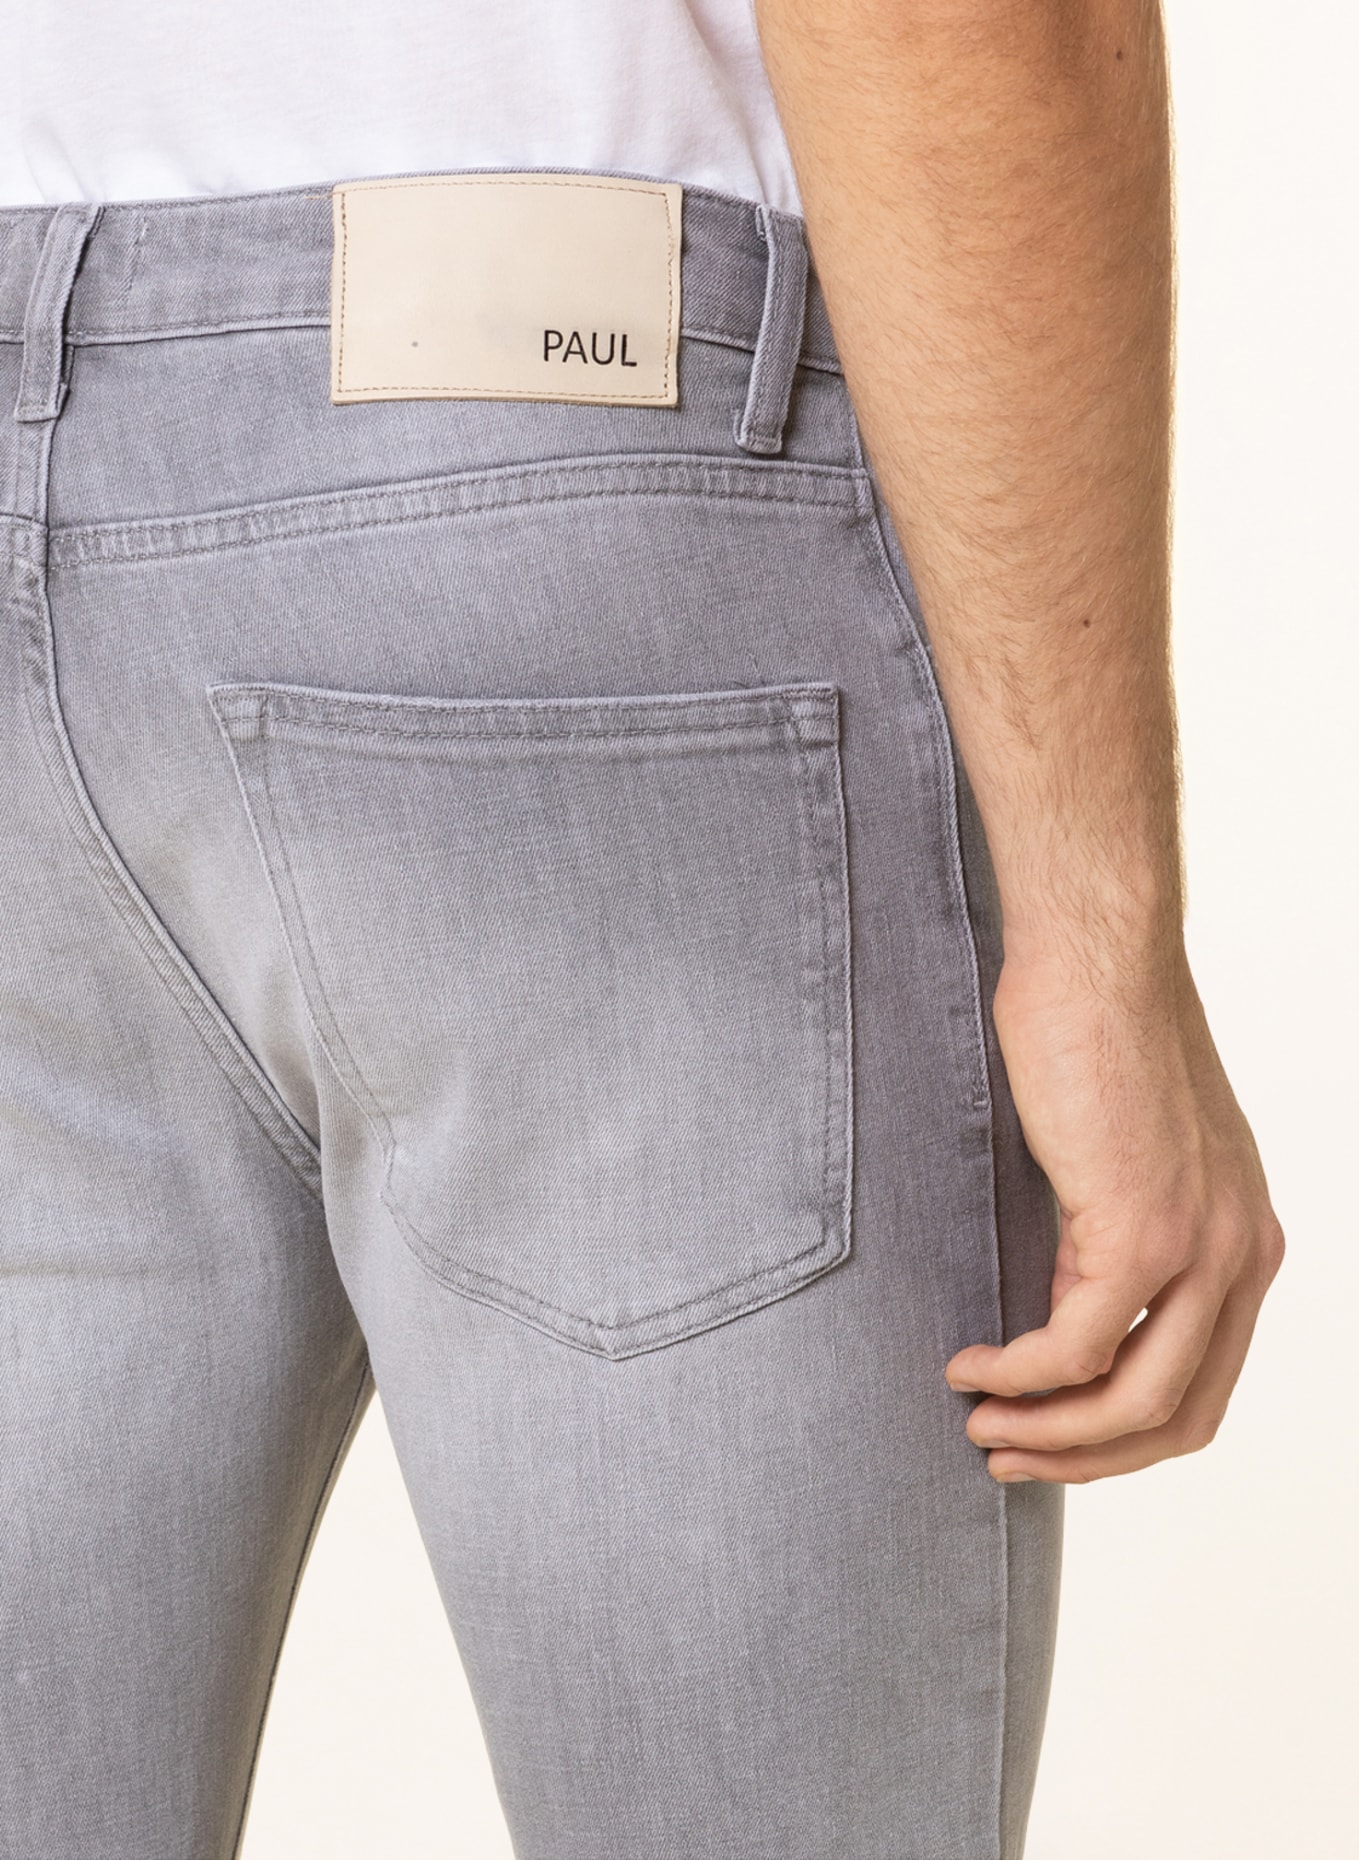 PAUL Jeans slim fit , Color: 4 GREY (Image 5)